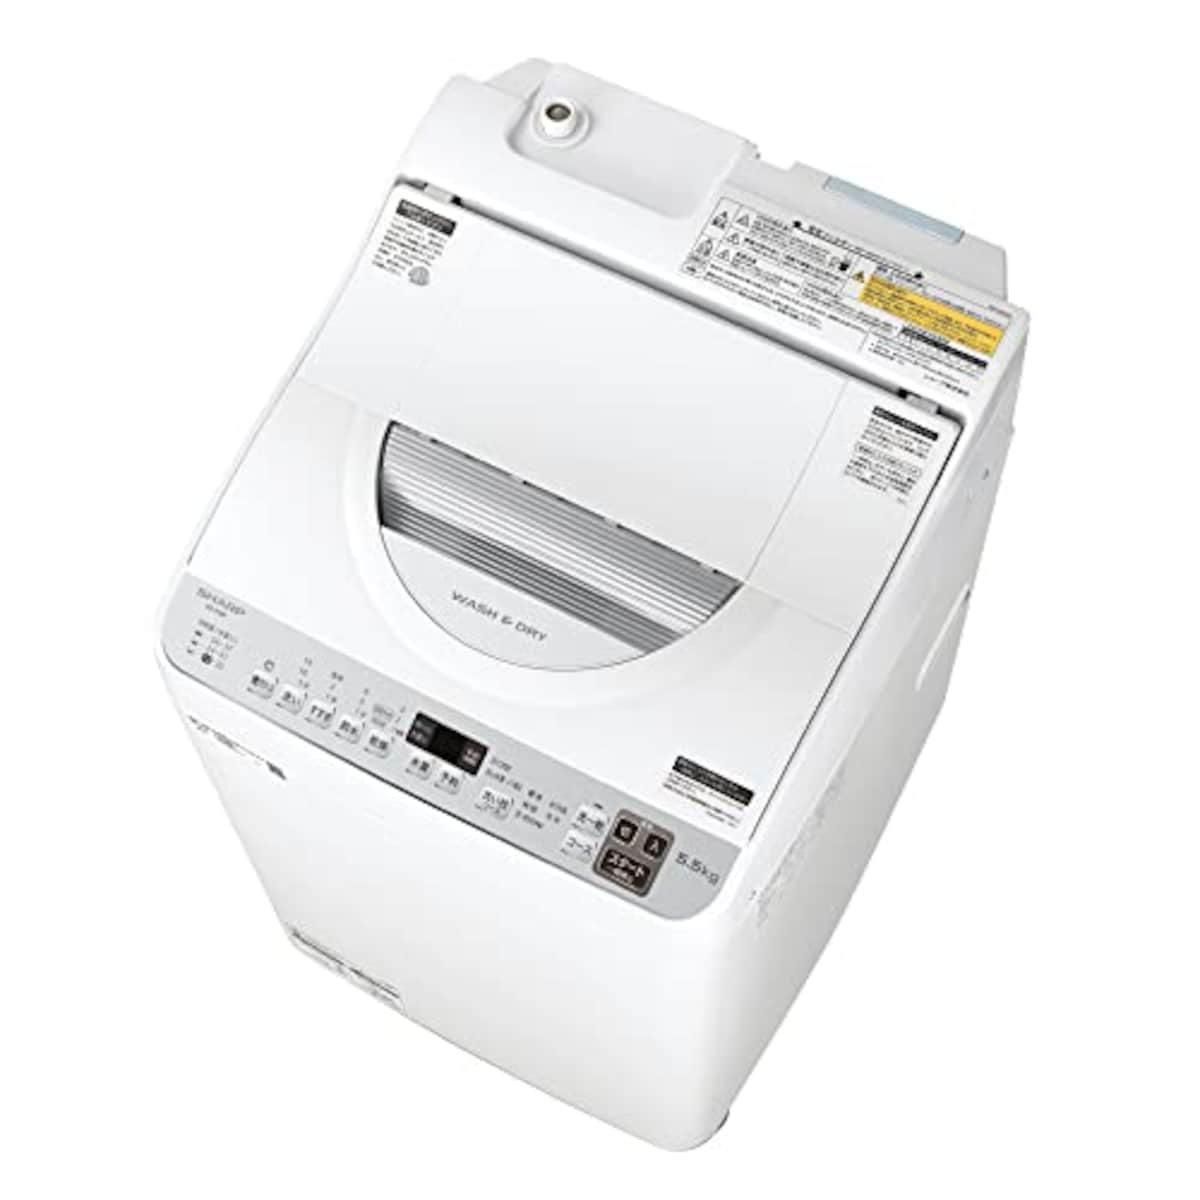 タテ型洗濯乾燥機 5.5kg